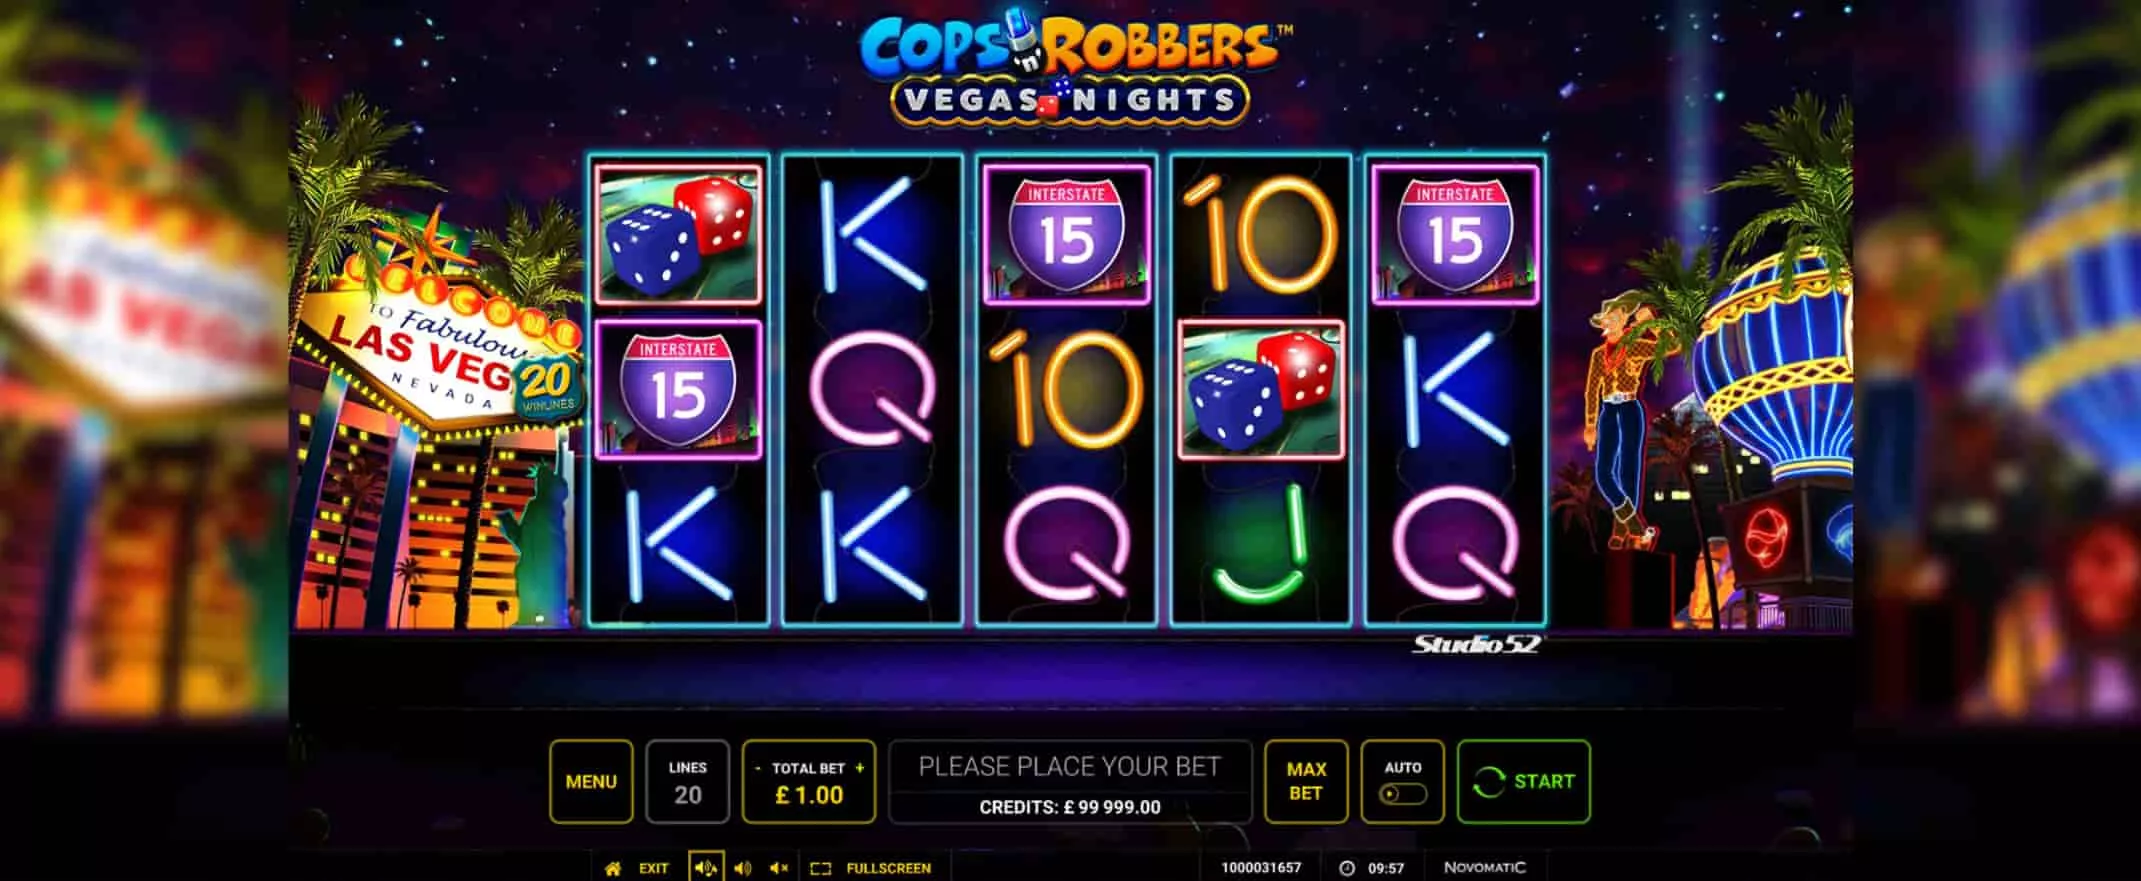 Cops n Robbers Vegas Nights slot screenshot of the reels